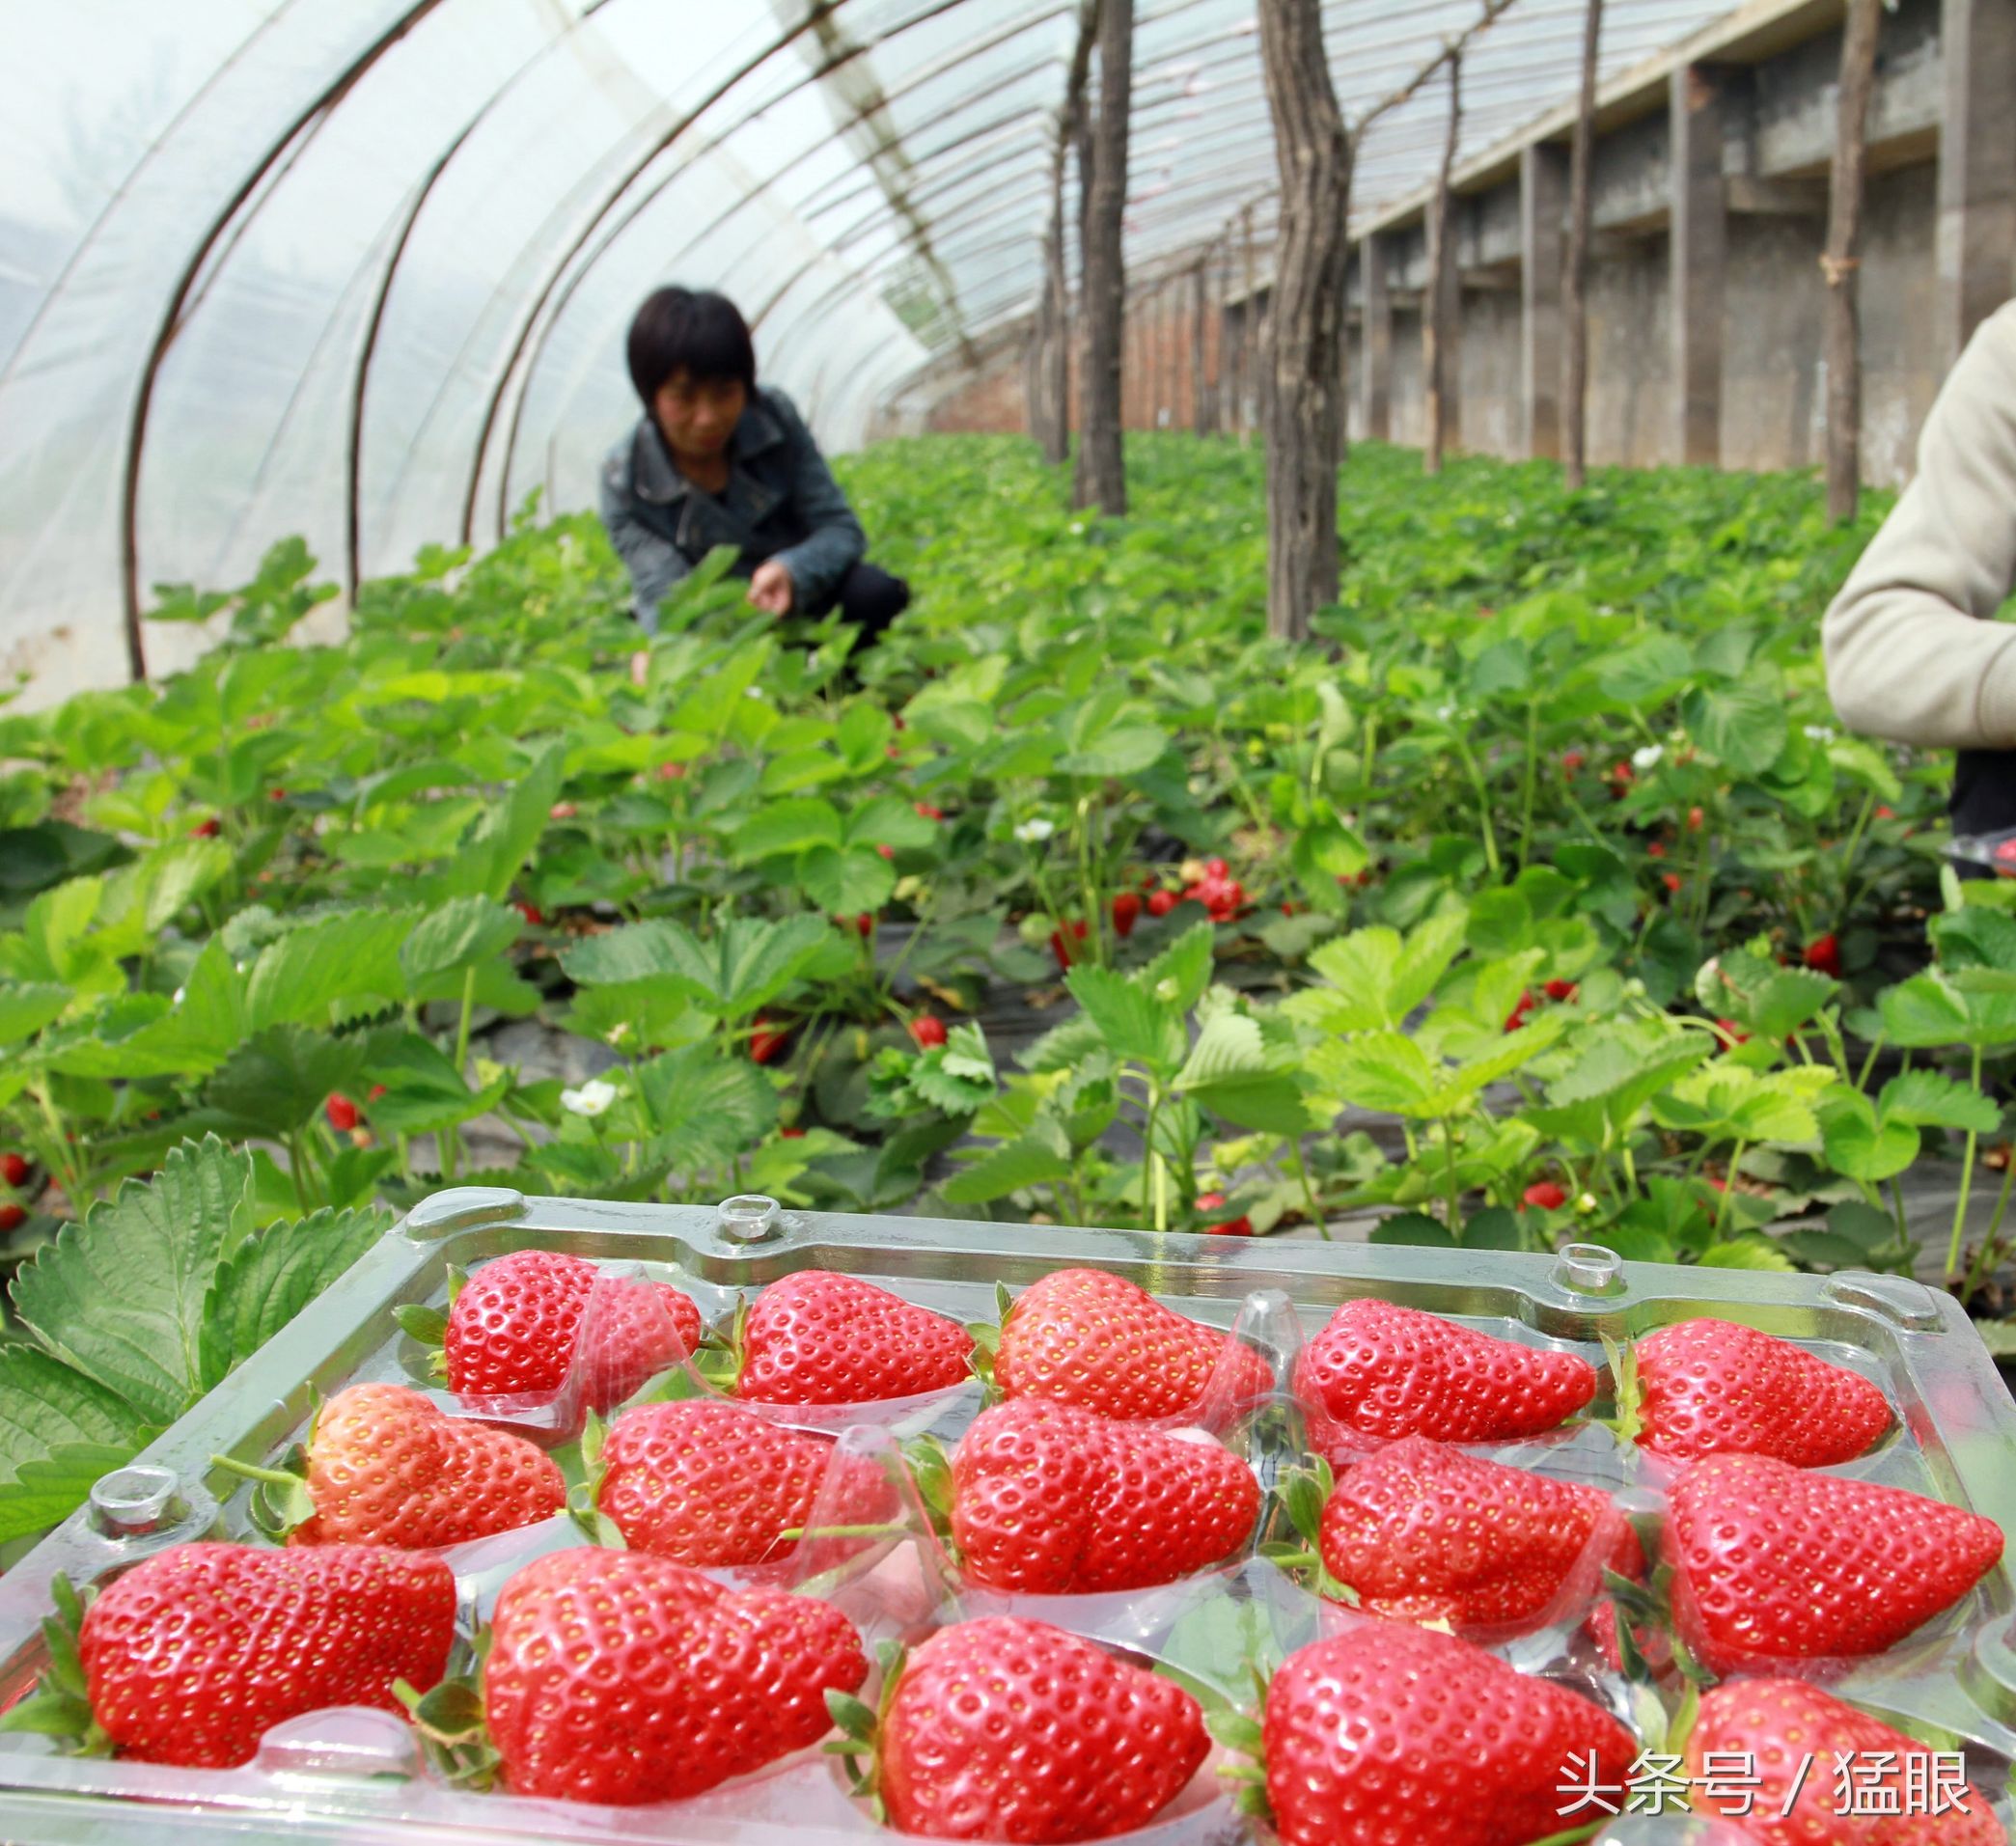 大棚采摘草莓50元一斤游客进里面随便吃一斤草莓能买3斤肉